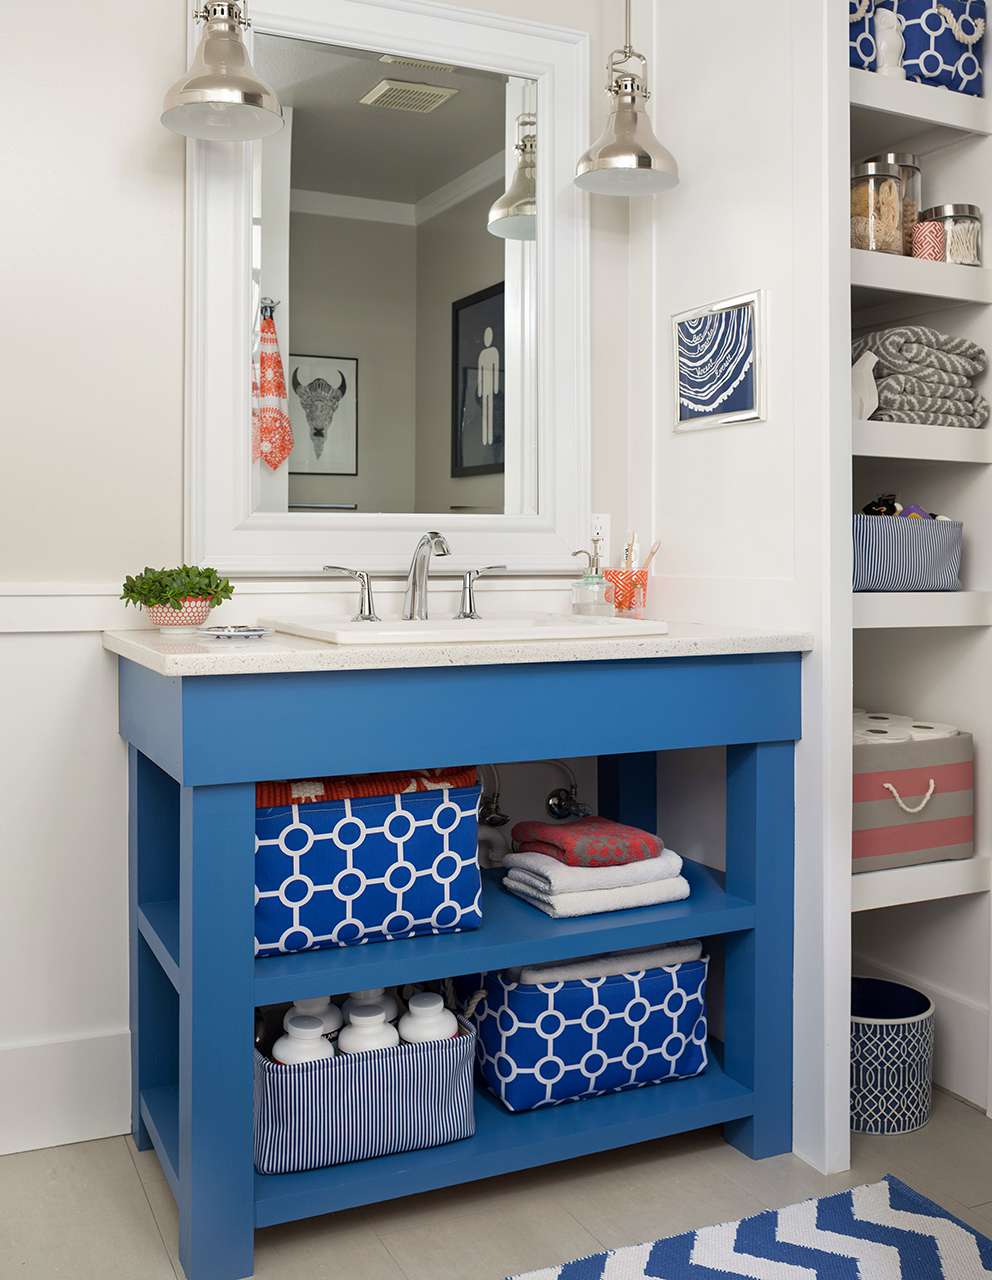 18 Diy Bathroom Vanity Ideas For Custom, Built In Vanity